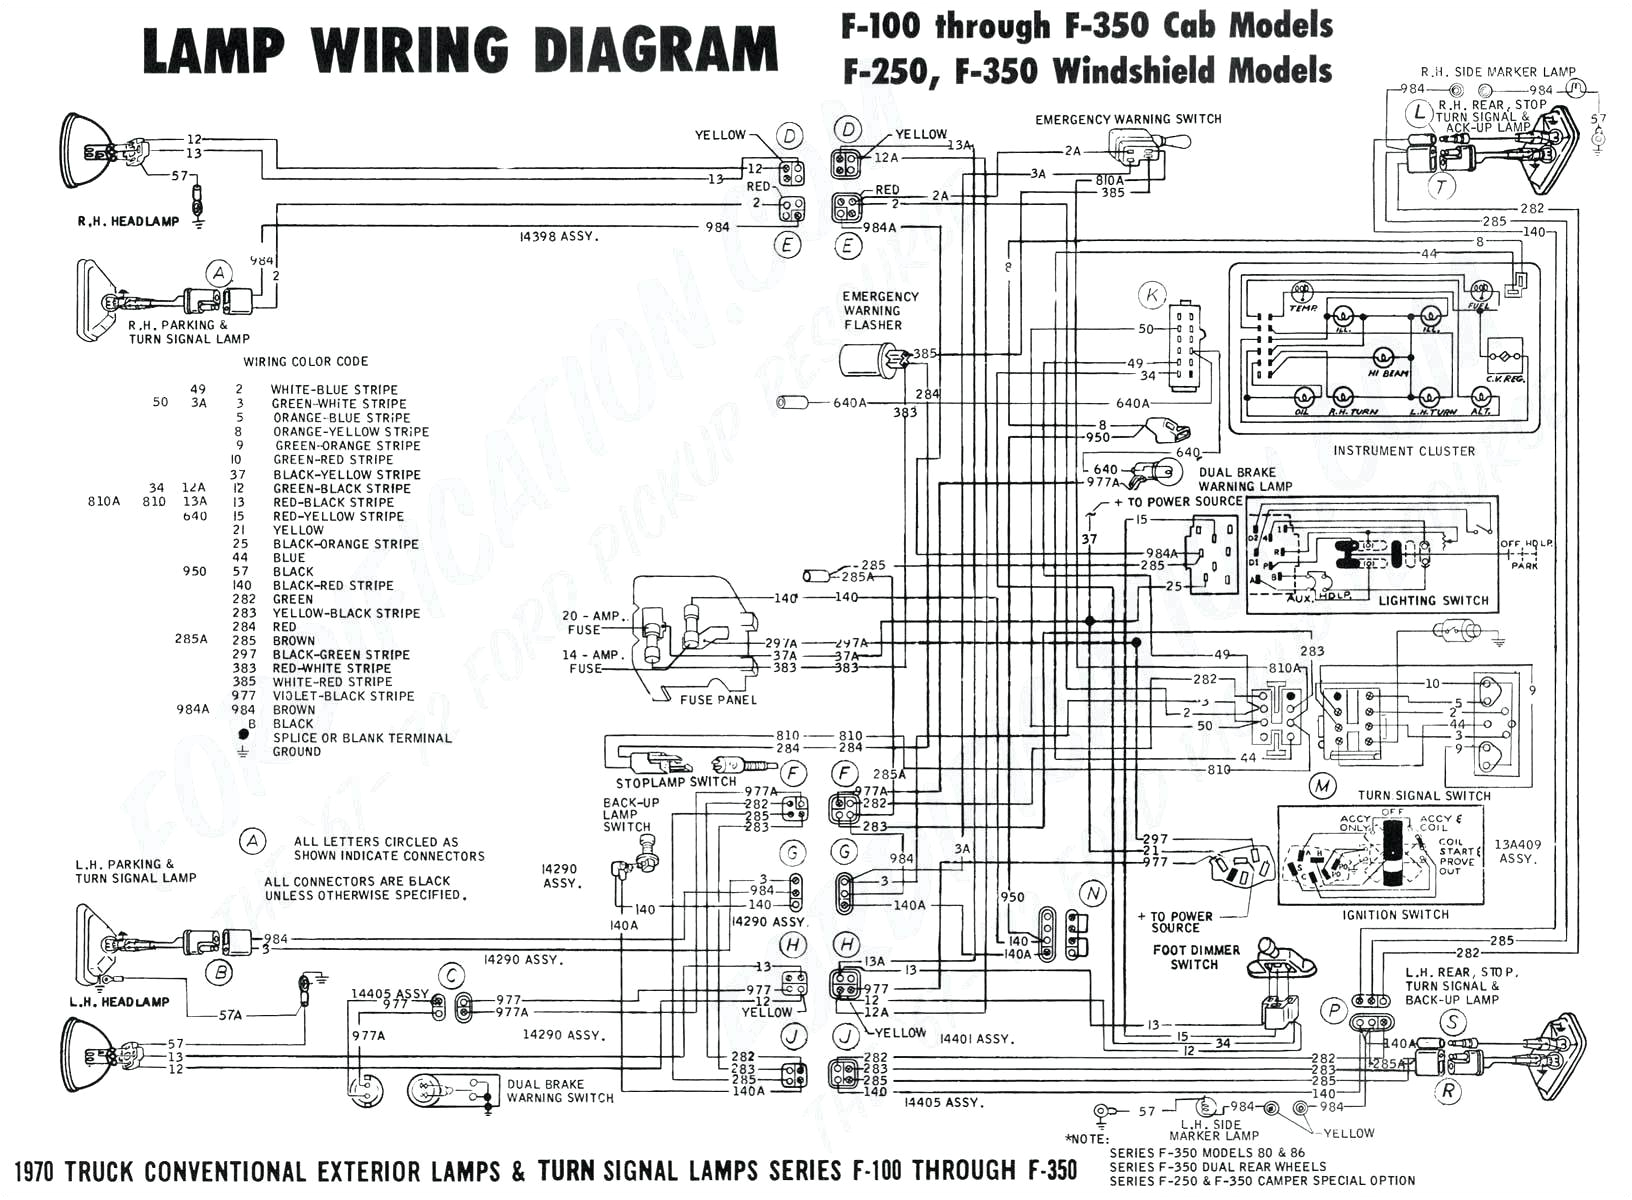 viking range wiring diagram bose earbud wiring diagram viking range wiring diagram wire viking range wiring diagram collection 3a jpg